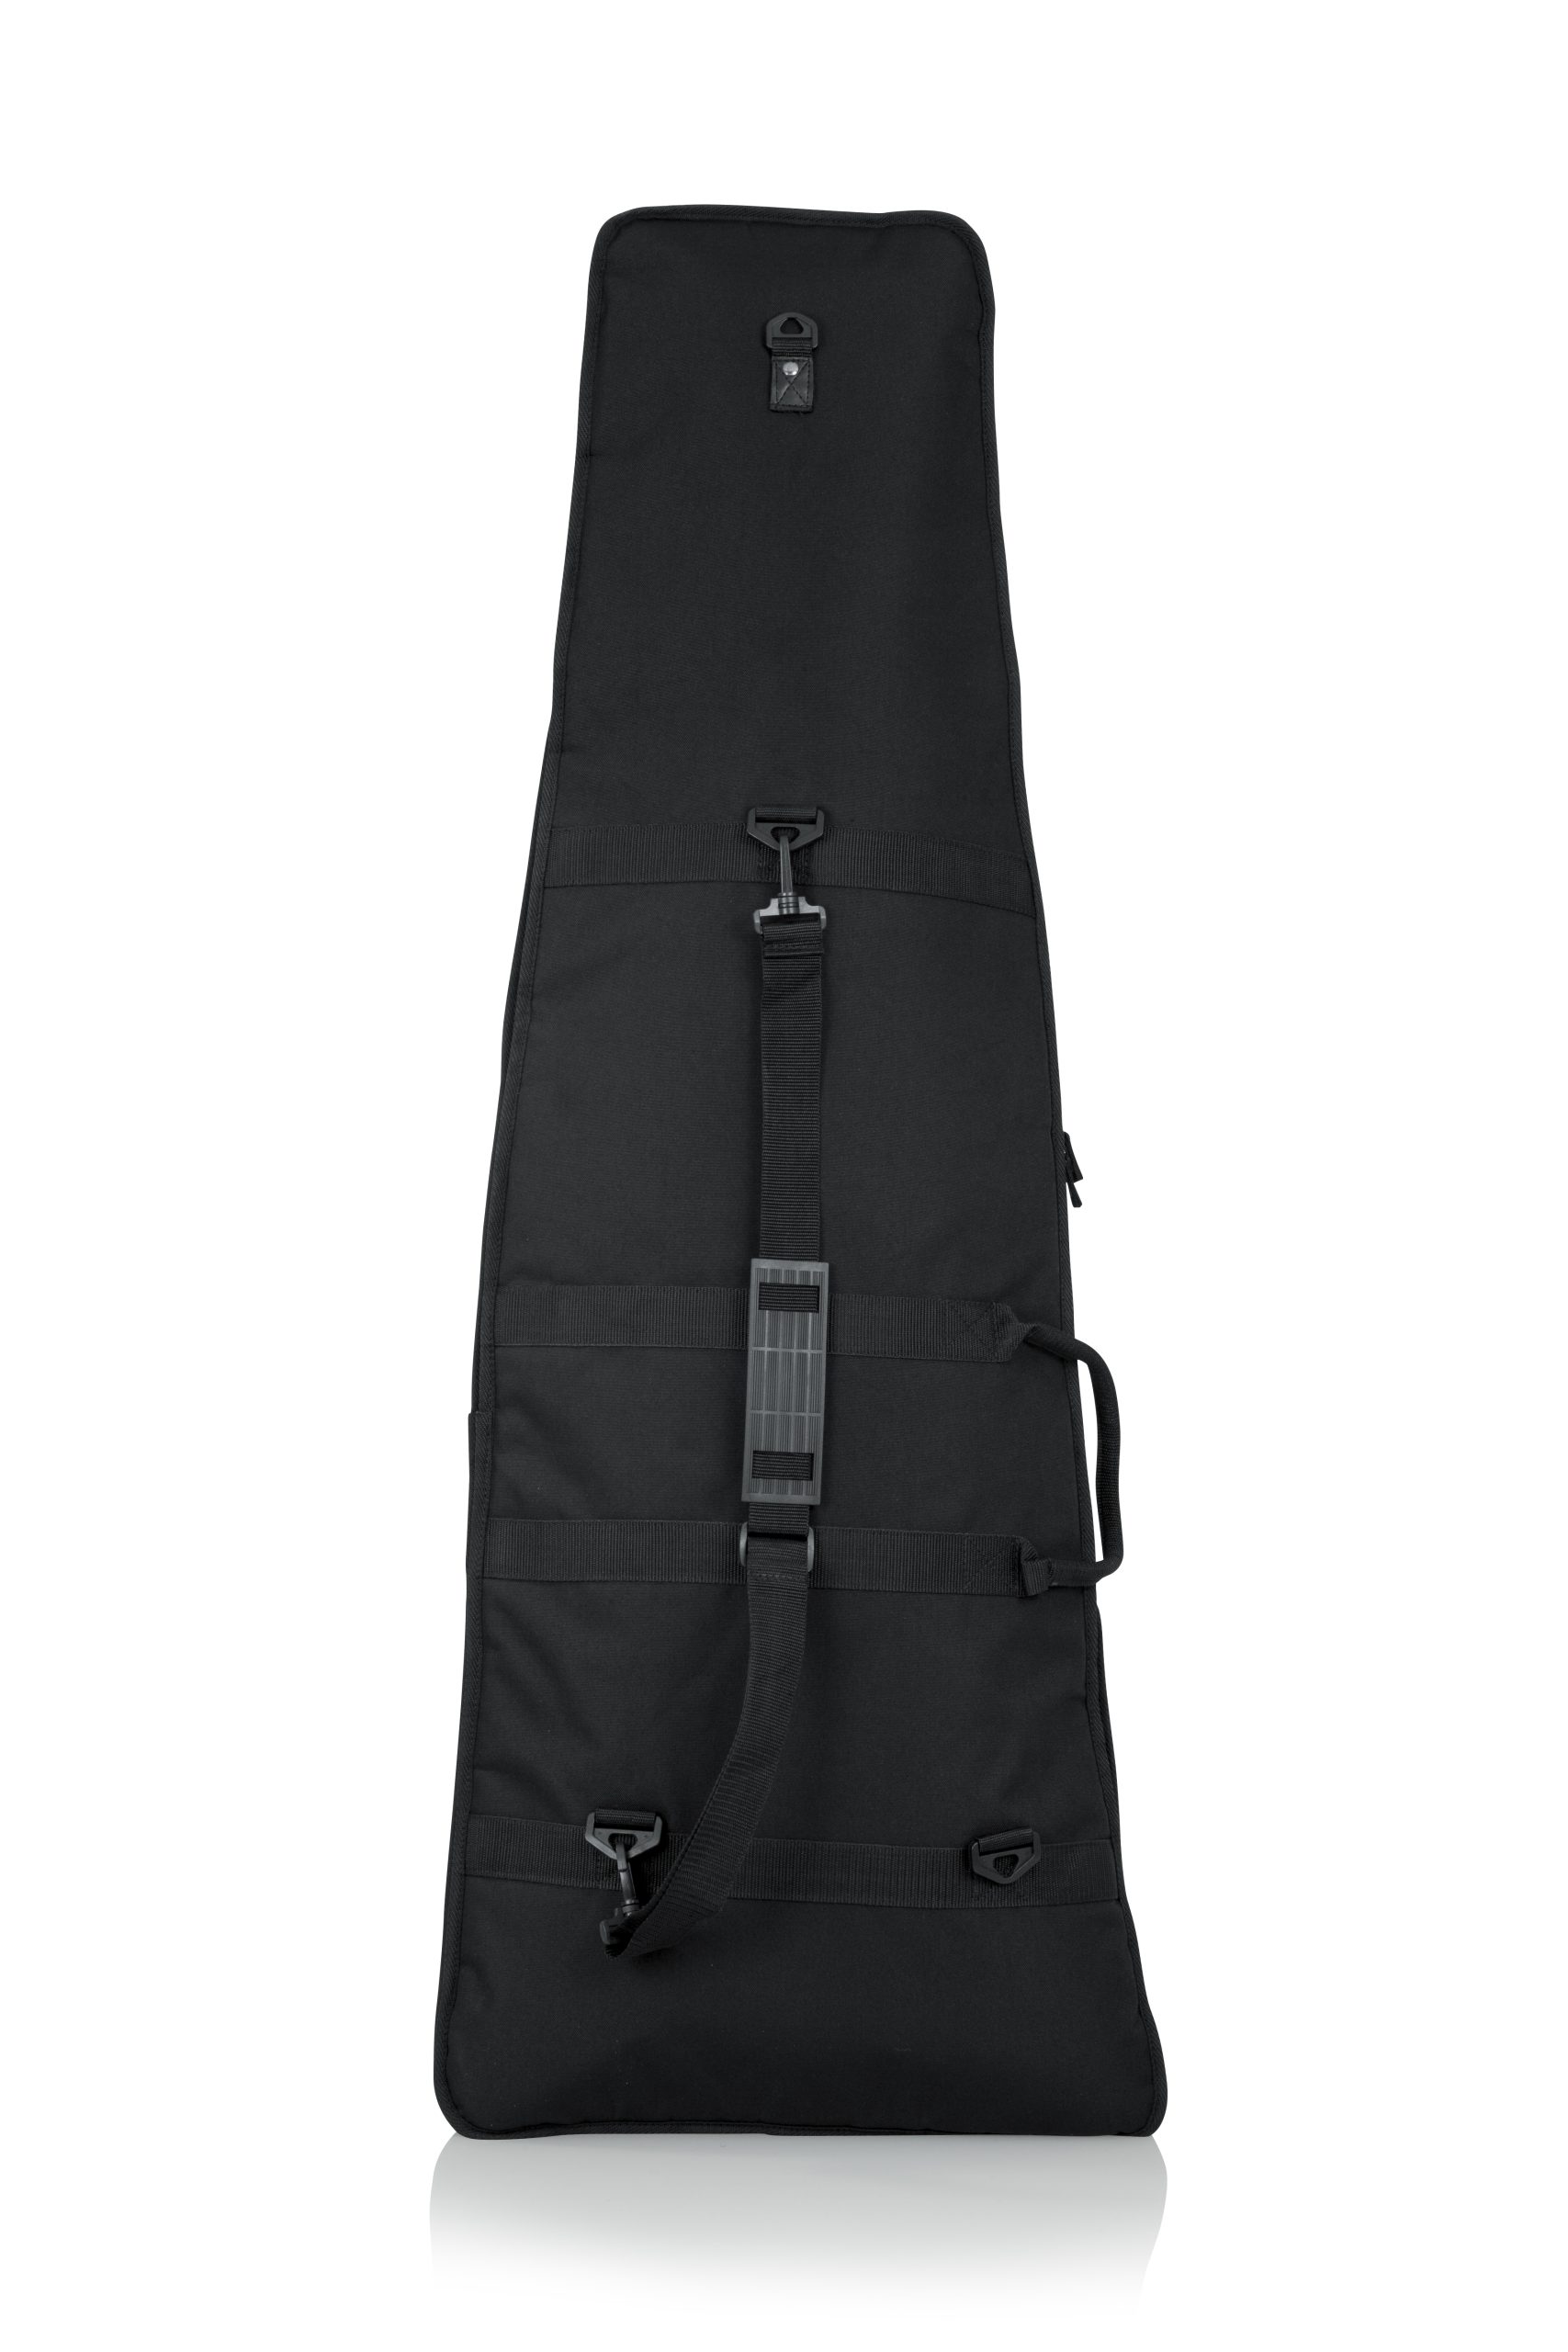 Unique Shaped Guitar Gig Bag